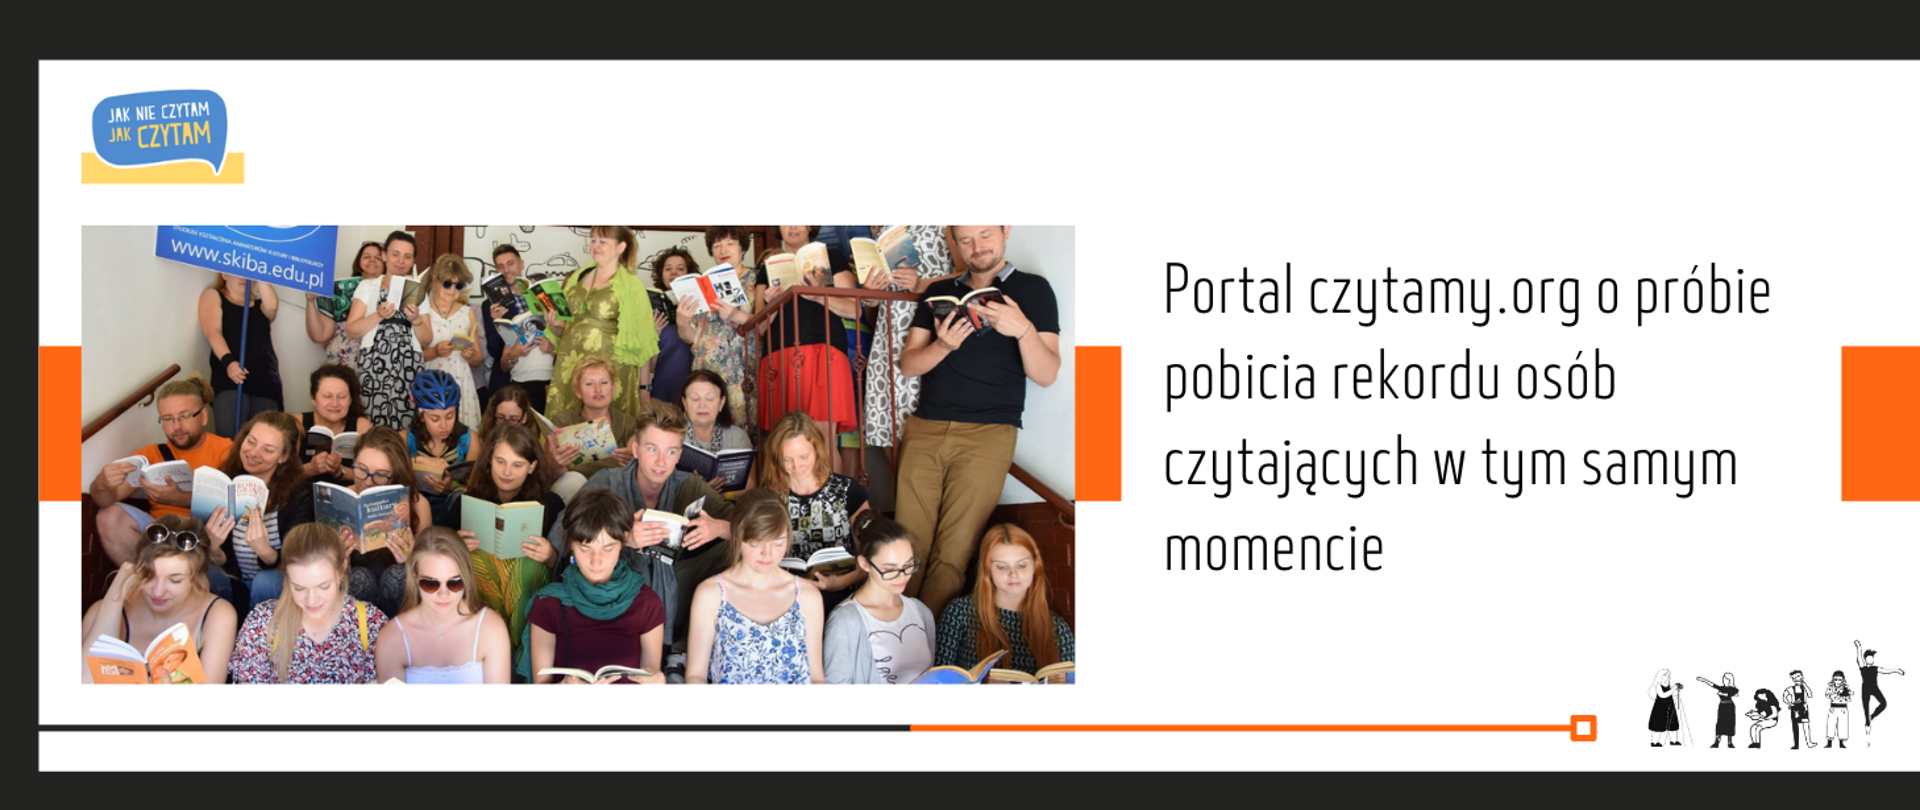 grafika białe tło, przez środek poziomy pomarańczowy pas, po lewej stronie zdjęcie licznej grupy młodych ludzi trzymających w rękach książki, po prawej stronie tekst Portal czytamy.org o próbie pobicia rekordu osób czytających w tym samym momencie